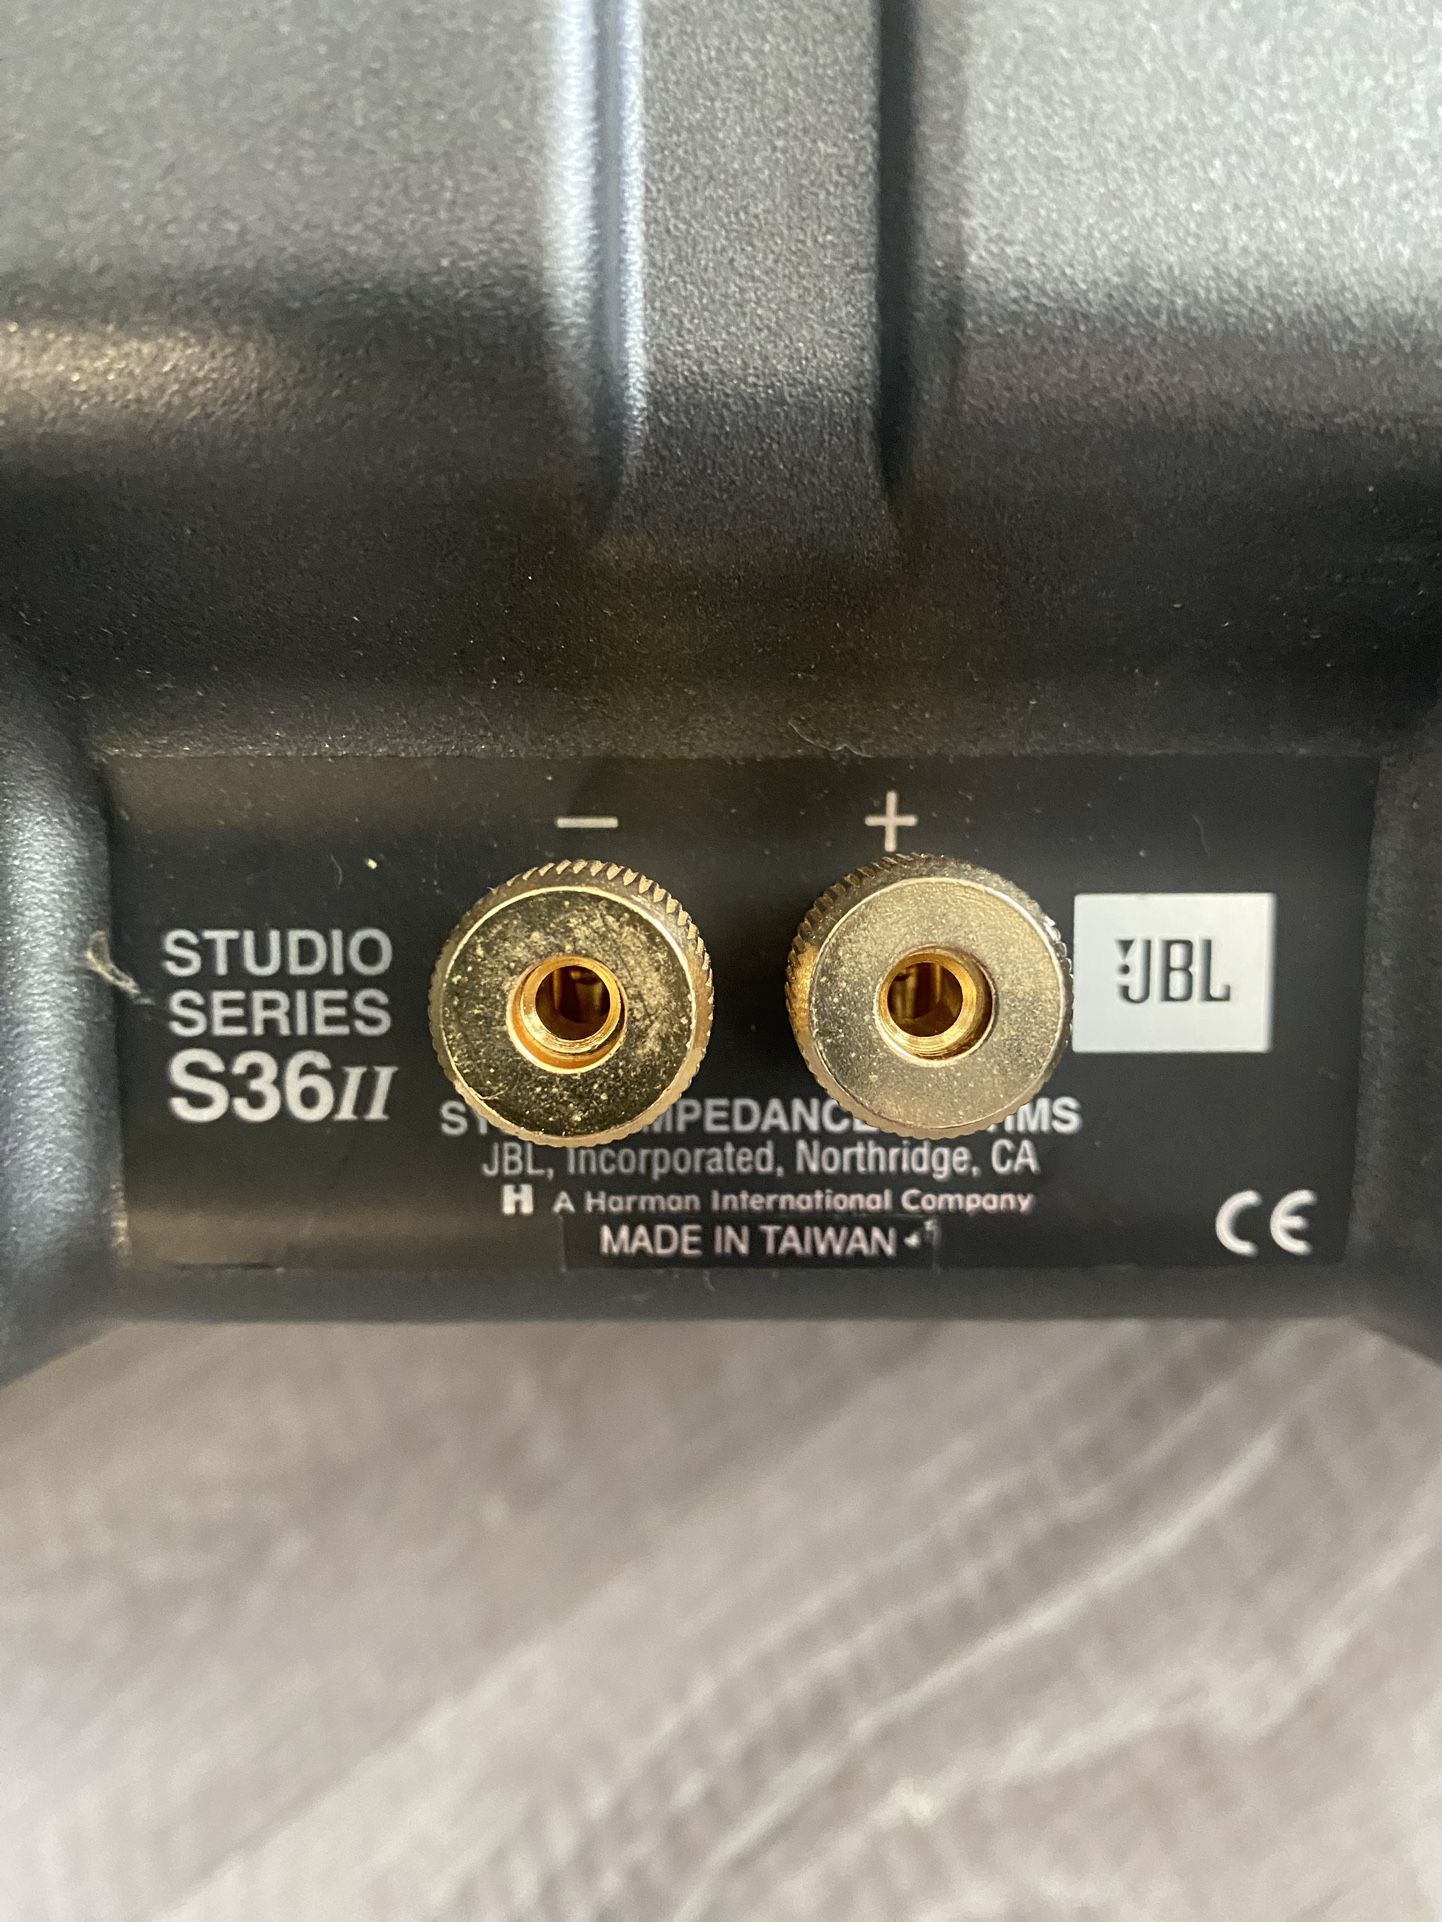 vidne skilsmisse nål JBL Studio Series S36 II Speakers for Sale in Puyallup, WA - OfferUp